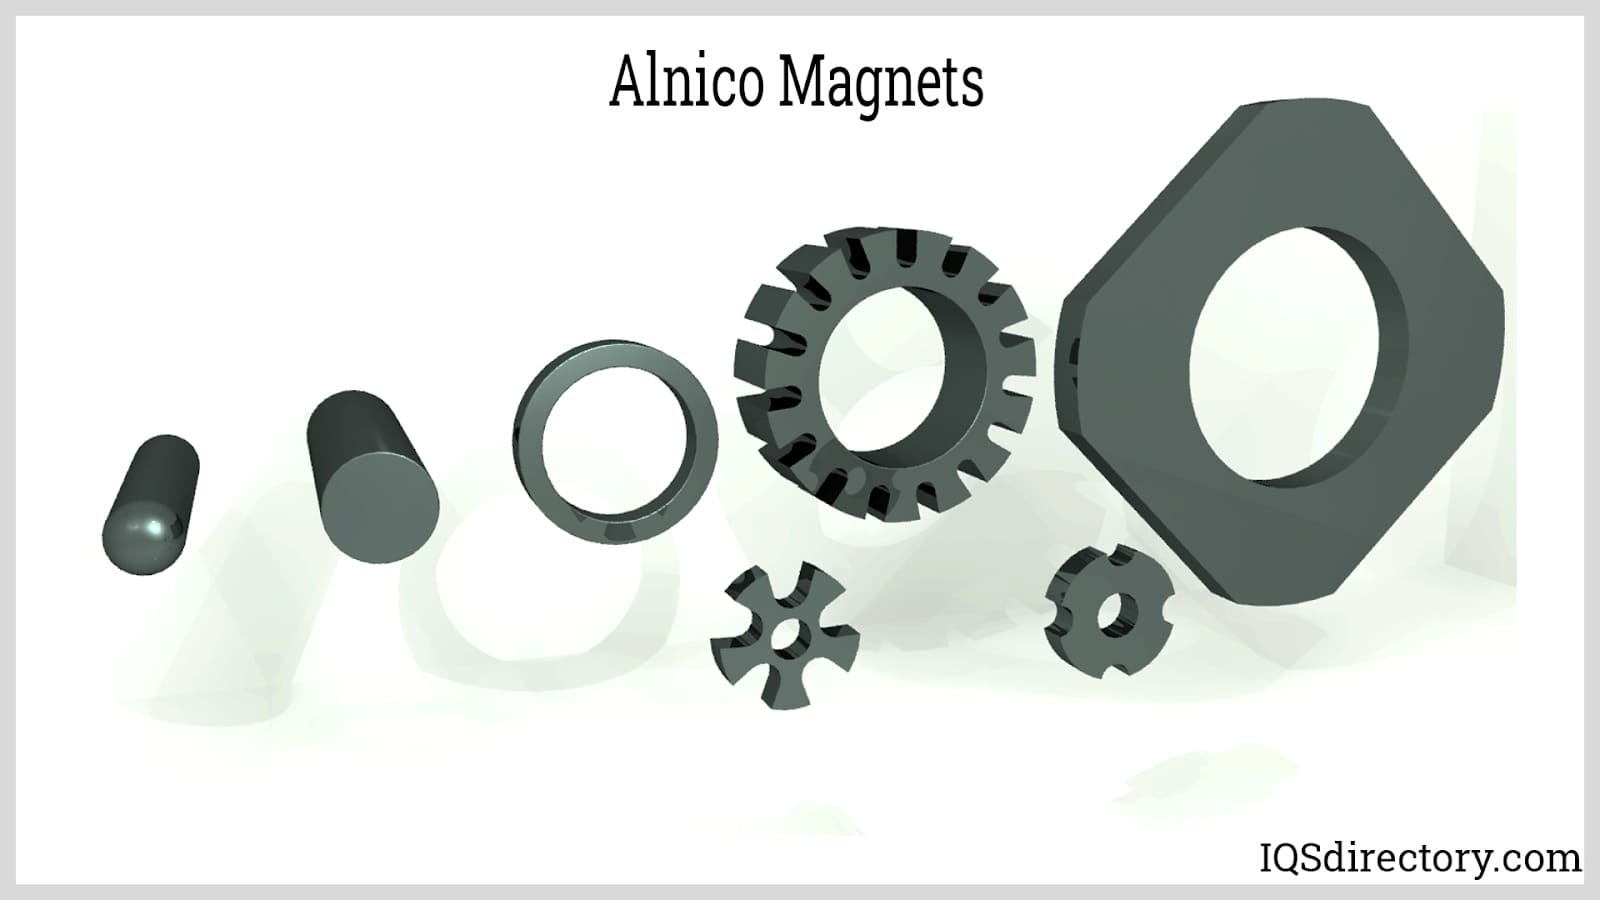 Alnico Magnet